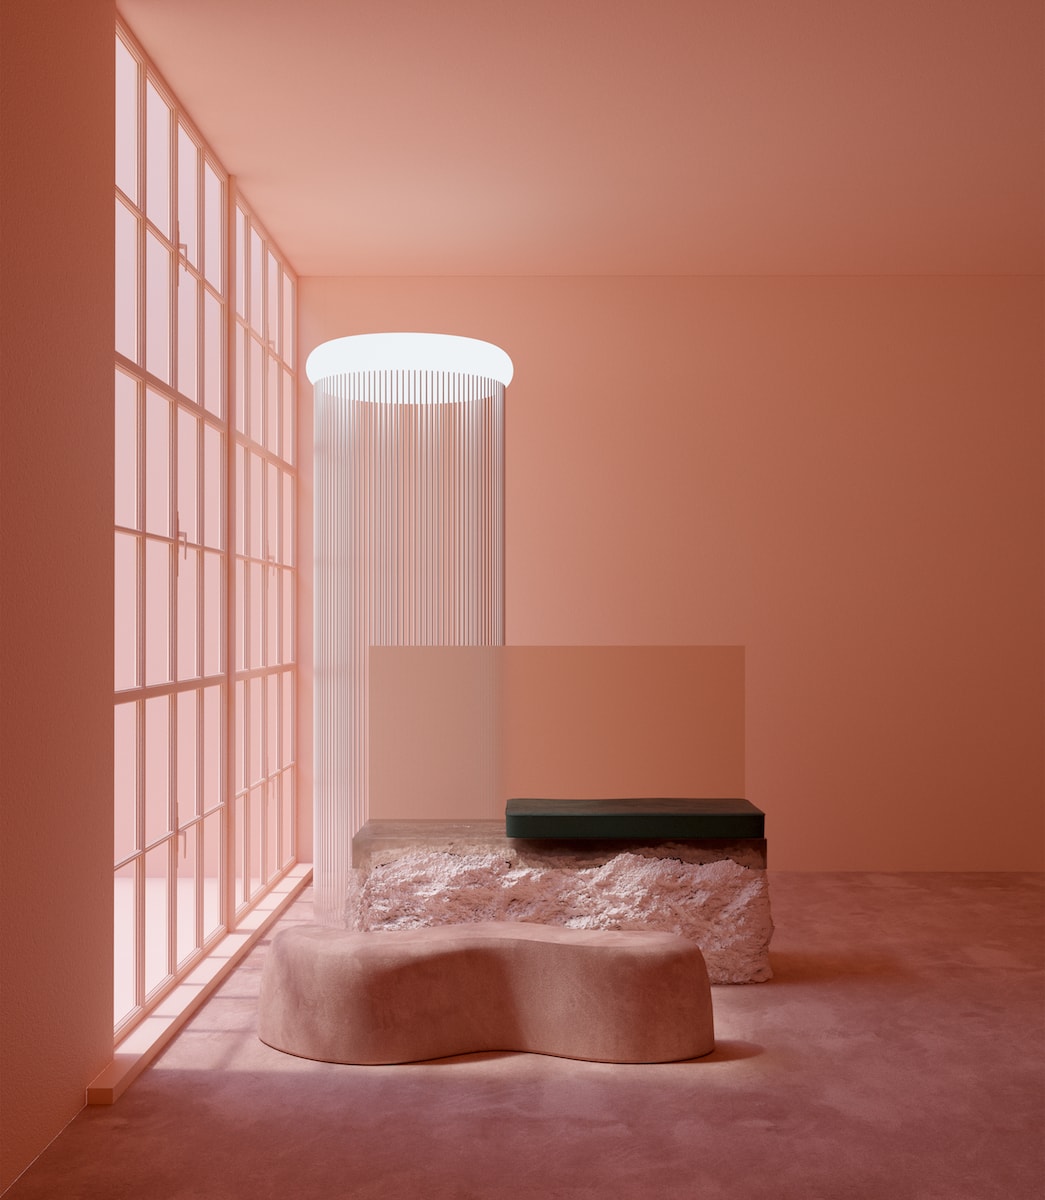 Studio Brasch A Lucid Dream In Pink Creative Studio Anders Brasch-Willumsen